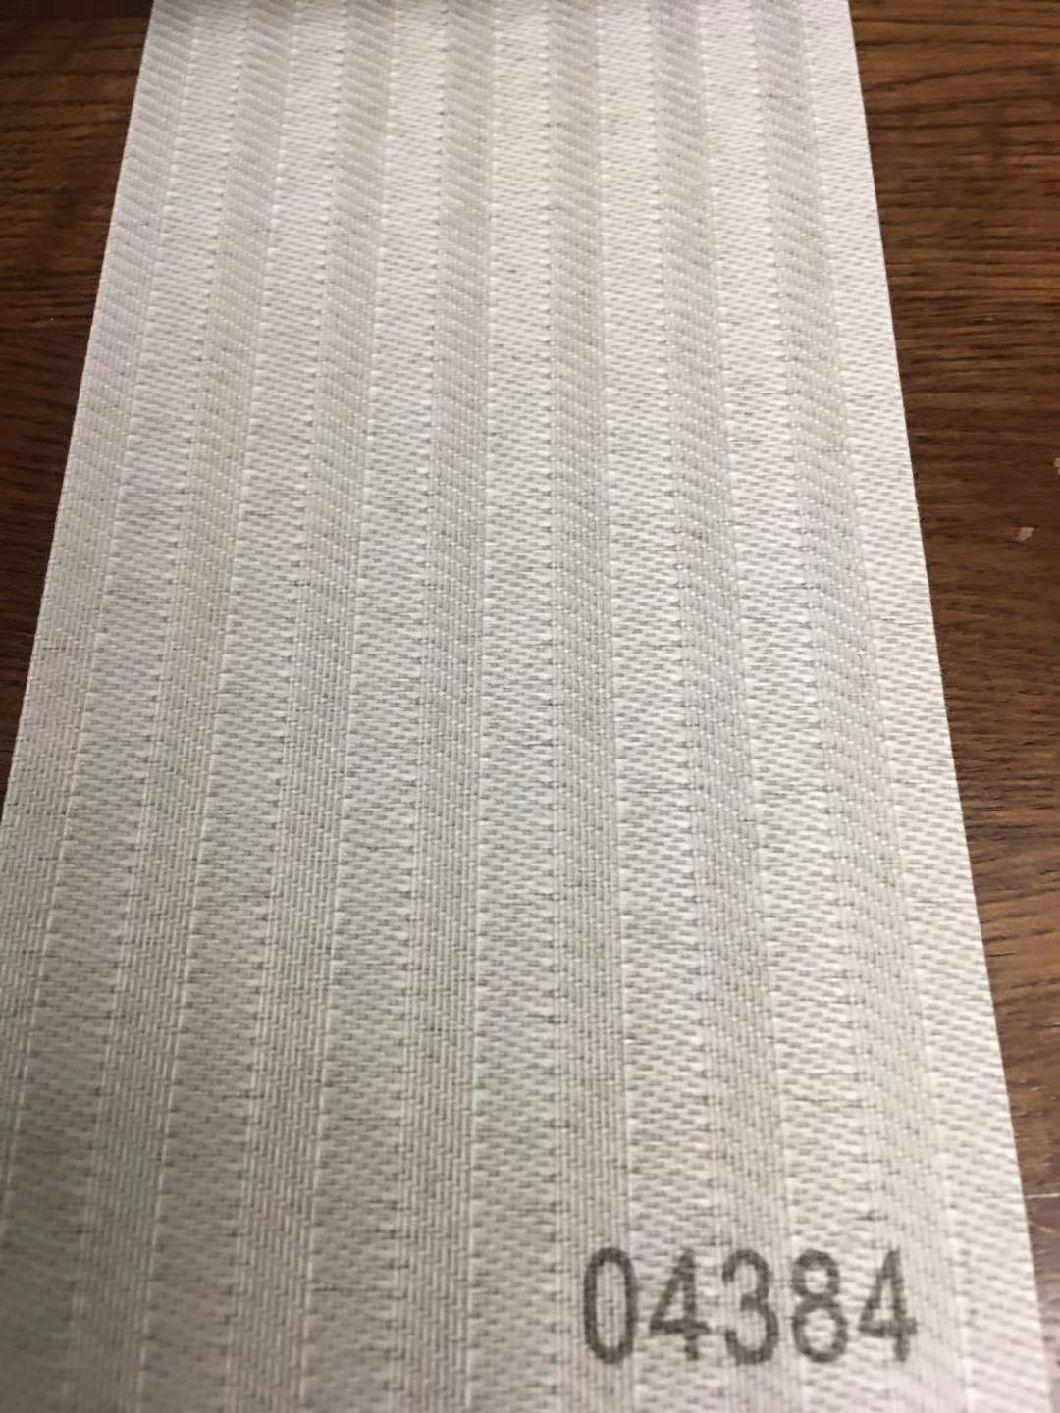 V21 Vertical Blinds Fabric